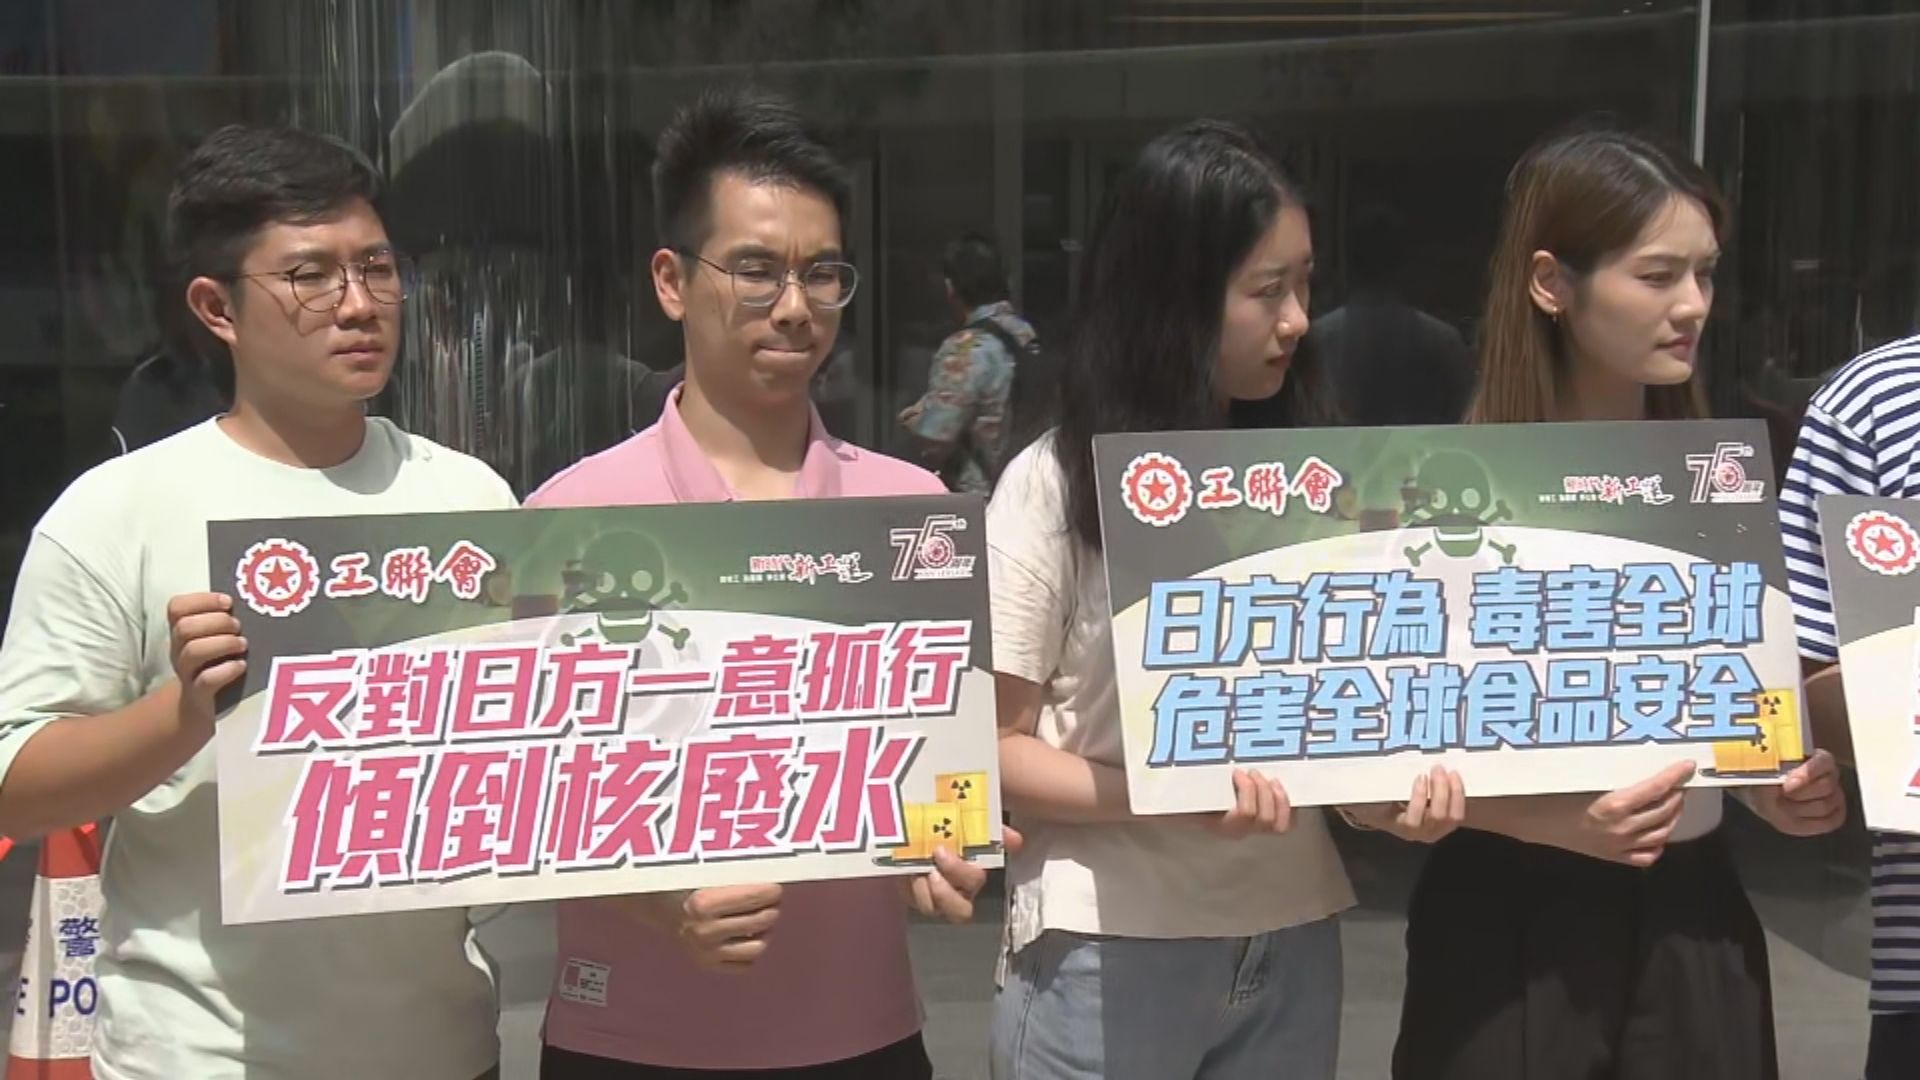 工聯會到日領館抗議排放核廢水 陳凱欣倡食物標籤註明具體原產地